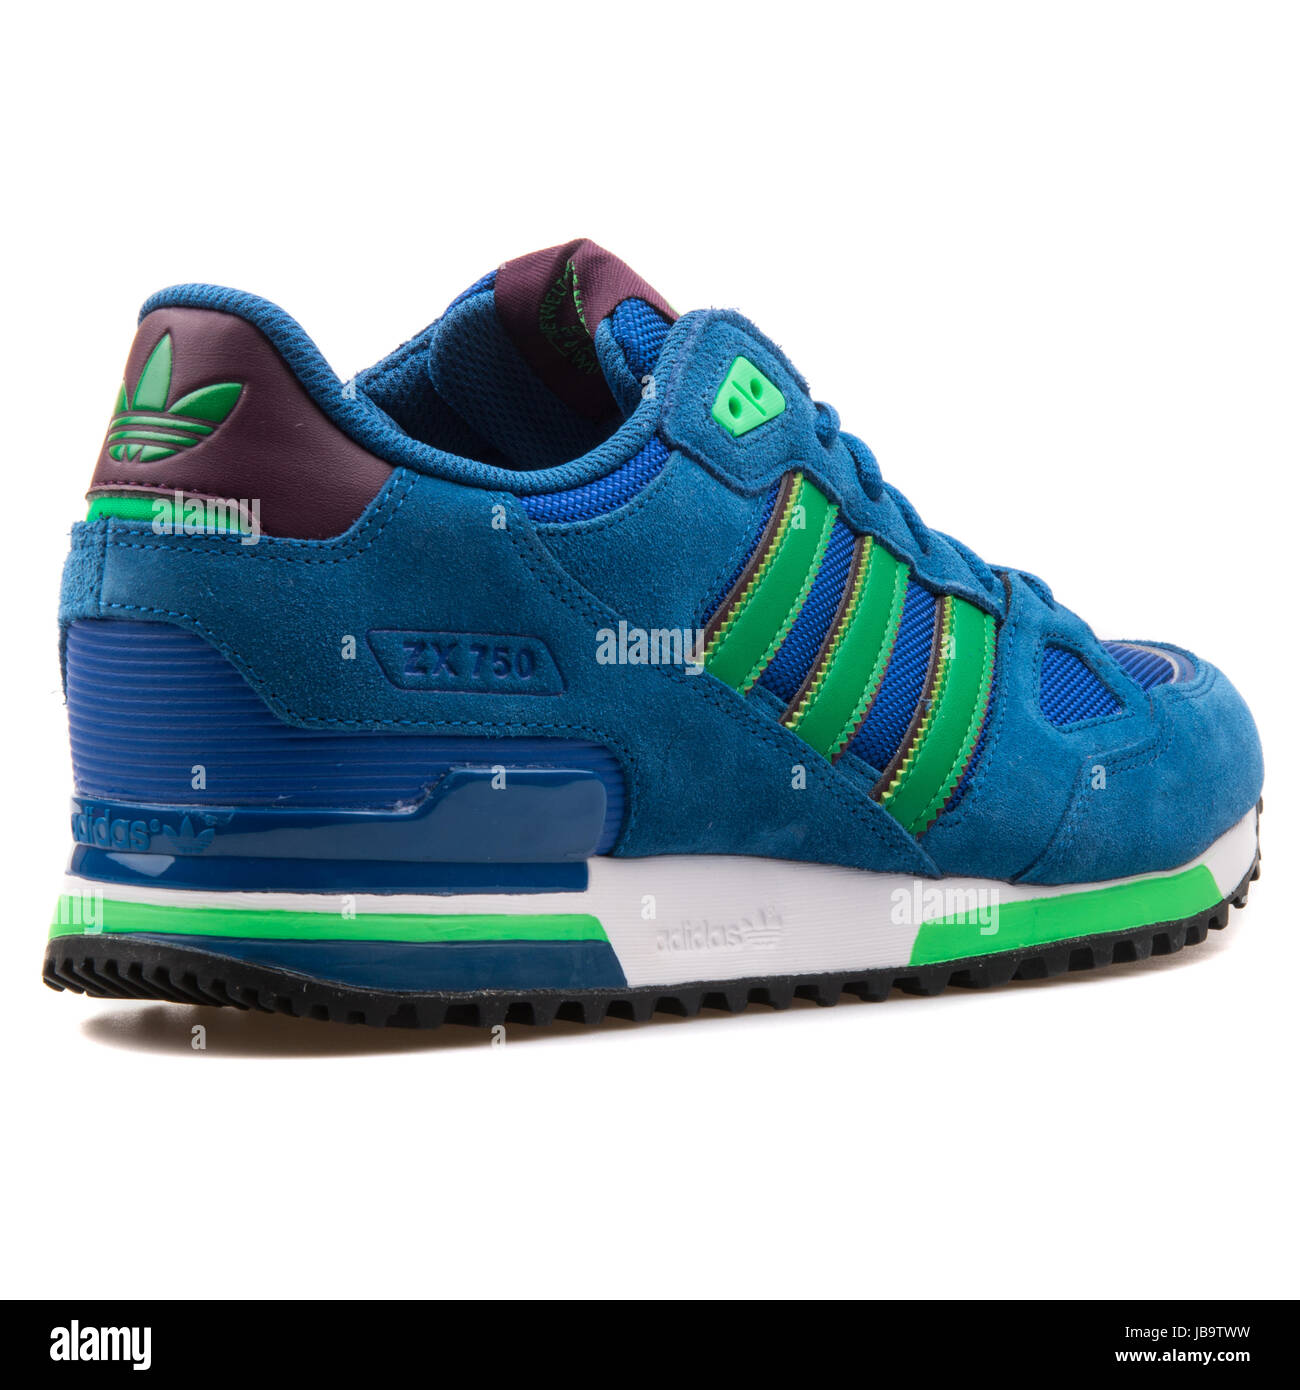 Periodic Ten years brand Adidas ZX 750 azul y verde los deportes masculinos Sneakers - B24857  Fotografía de stock - Alamy